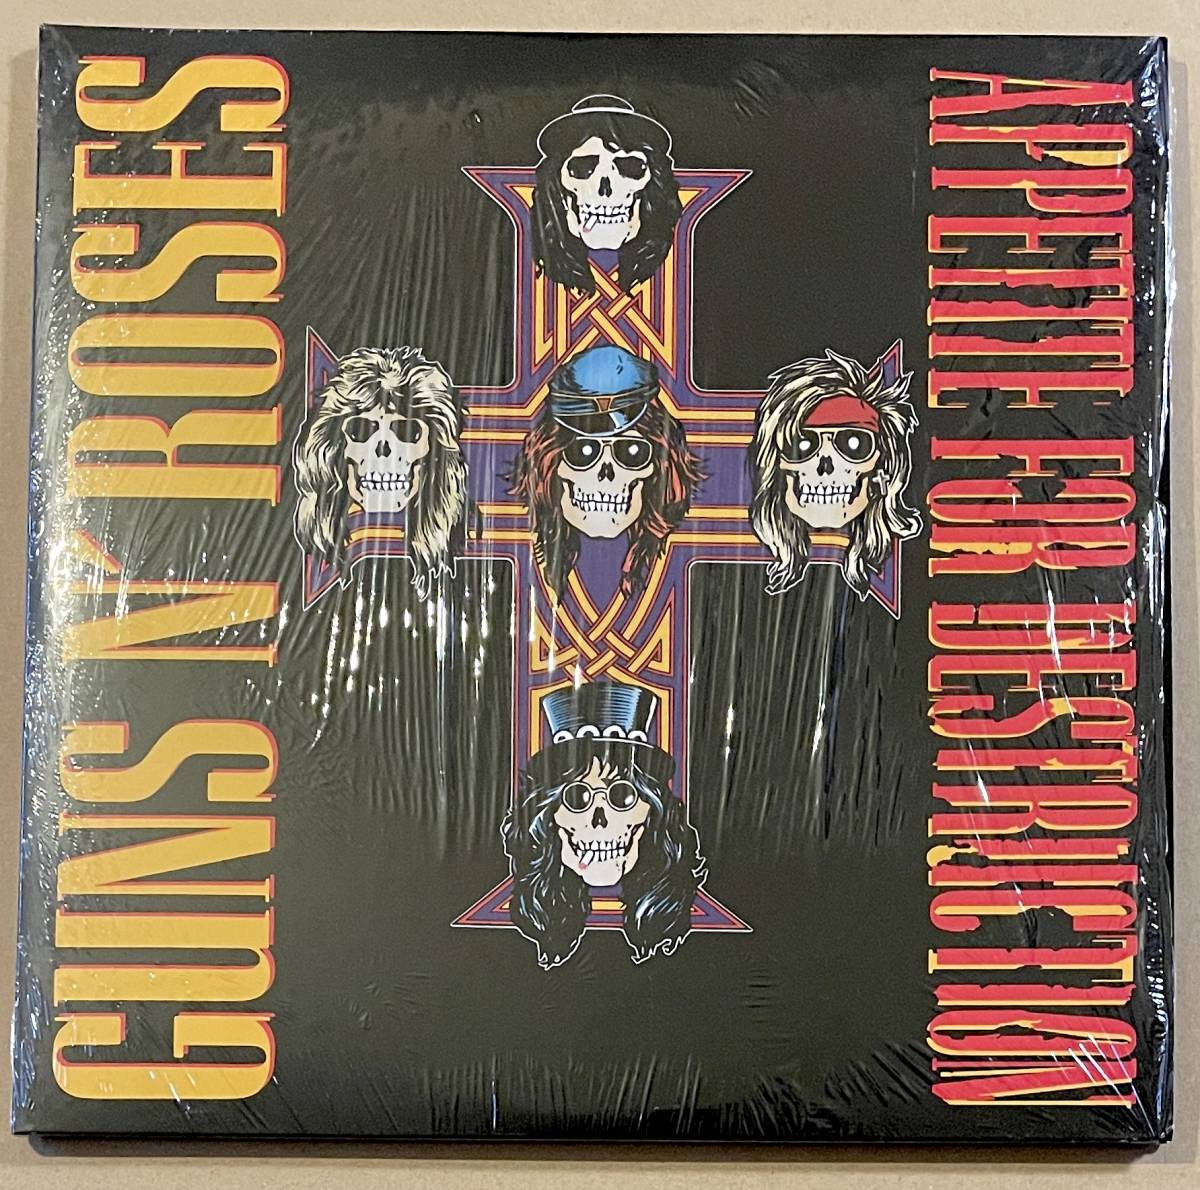 LP2枚組 高音質・高圧 Guns N' Roses Appetite For Destruction ガンズ・アンド・ローゼズ ファースト アナログ盤 レコード_画像2